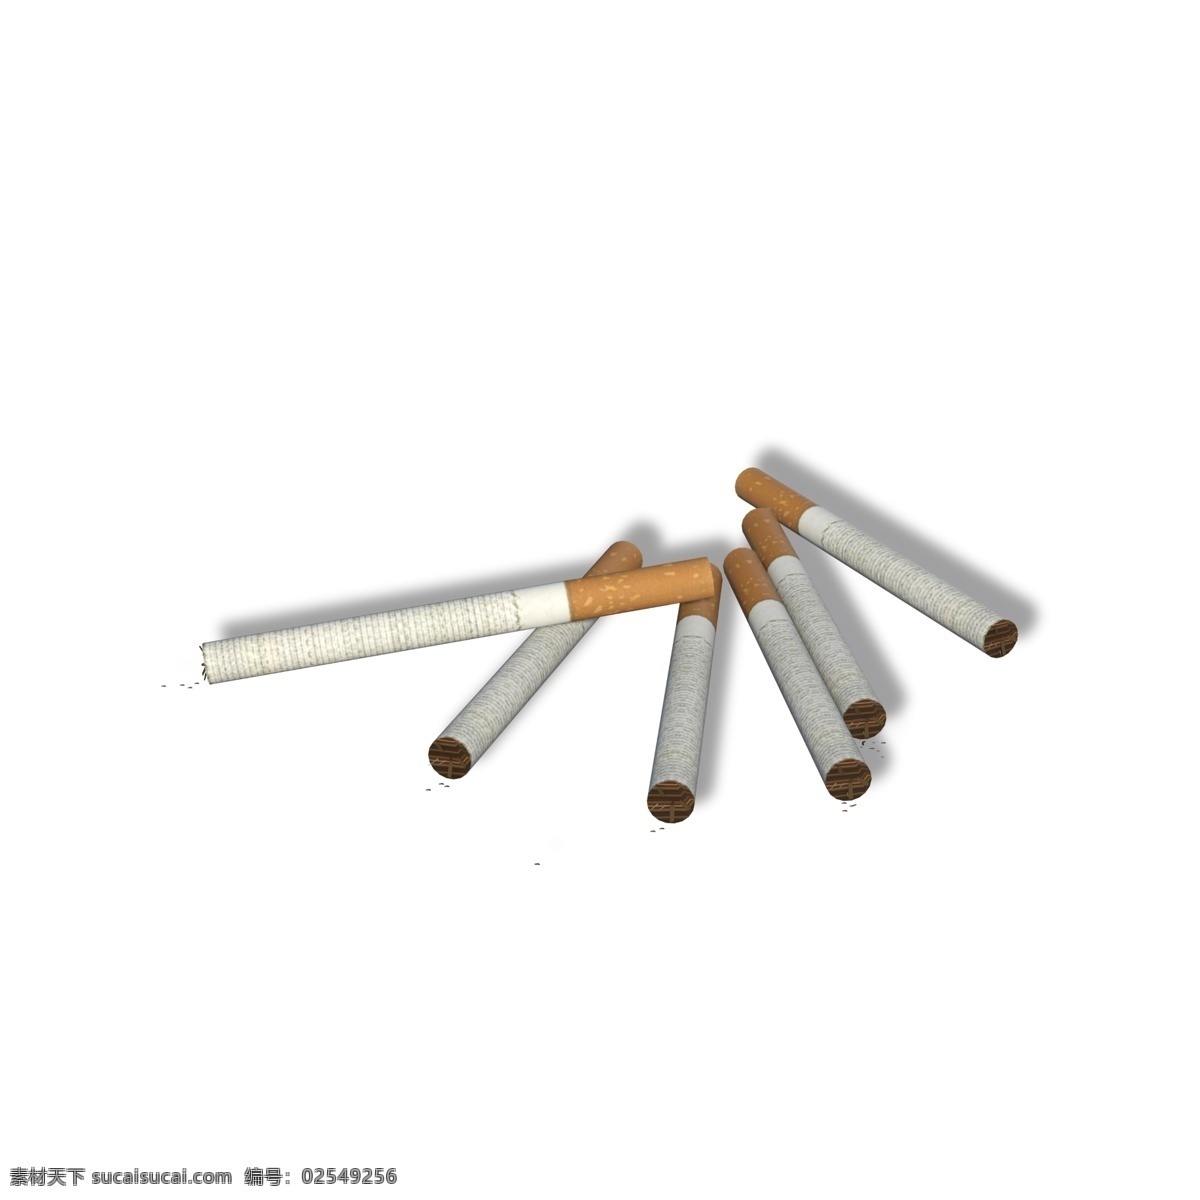 六 支 散落 无名 香烟 烟草 有害健康 禁止吸烟 卷烟